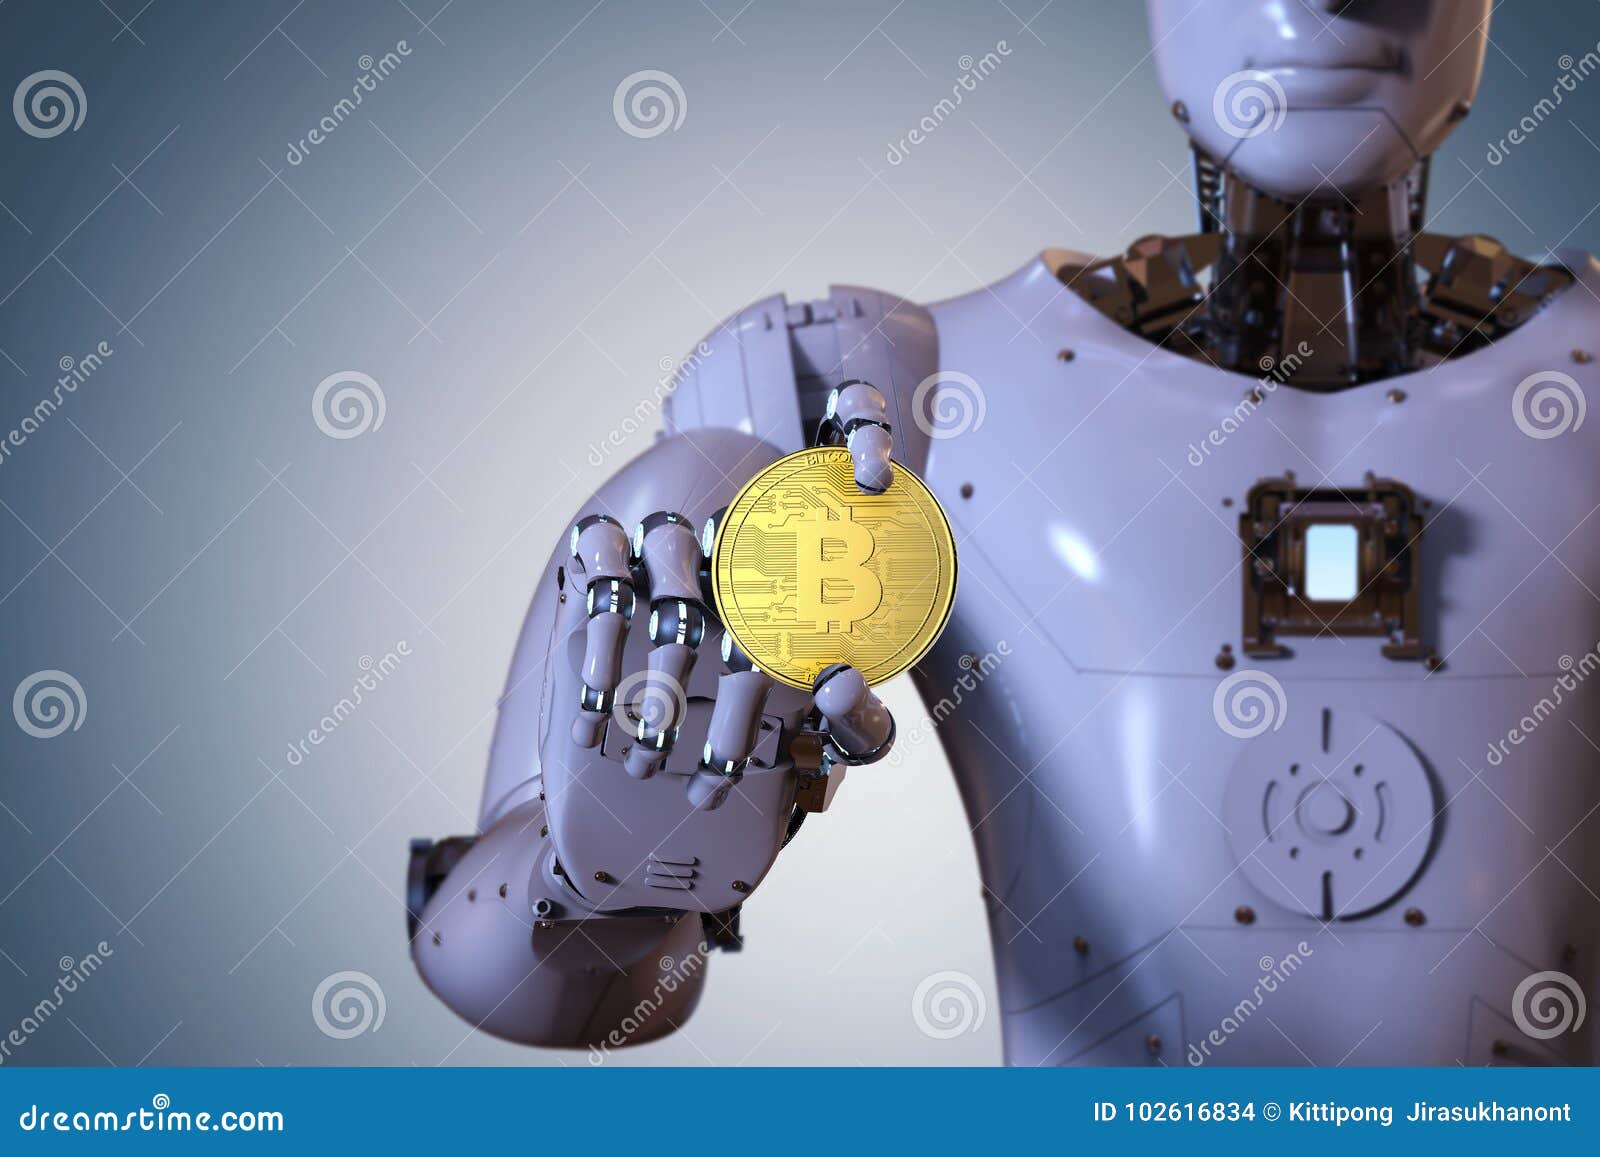 bitcoin robot